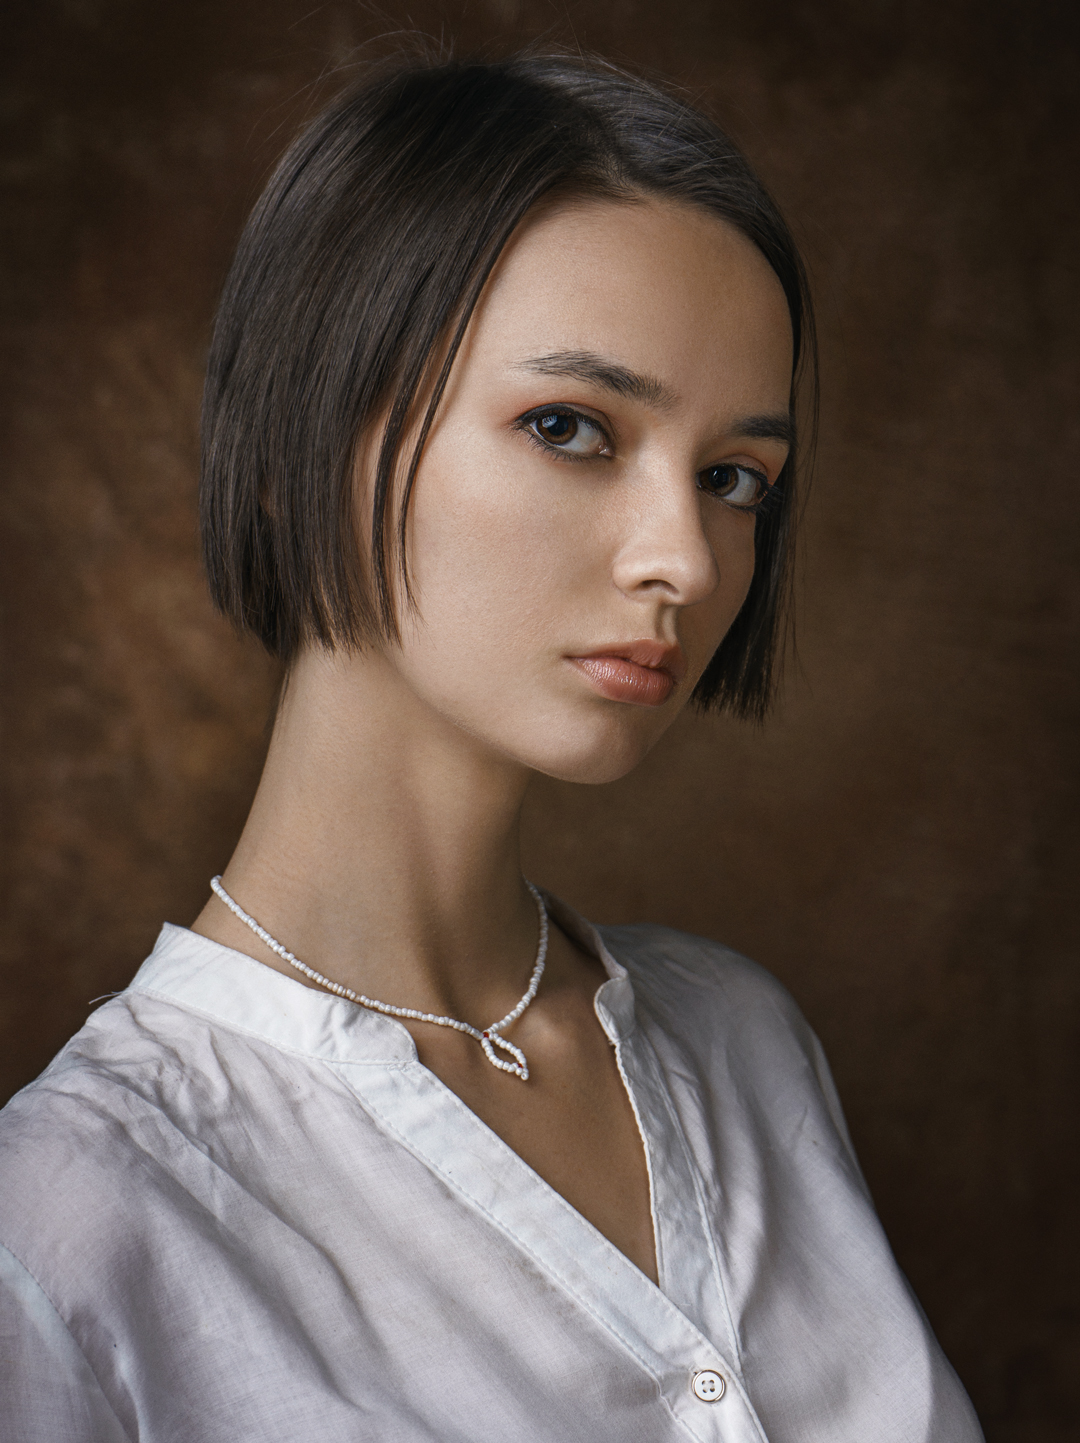 People 1080x1443 Aleksey Gurylev women dark hair short hair brown eyes looking at viewer white clothing simple background portrait